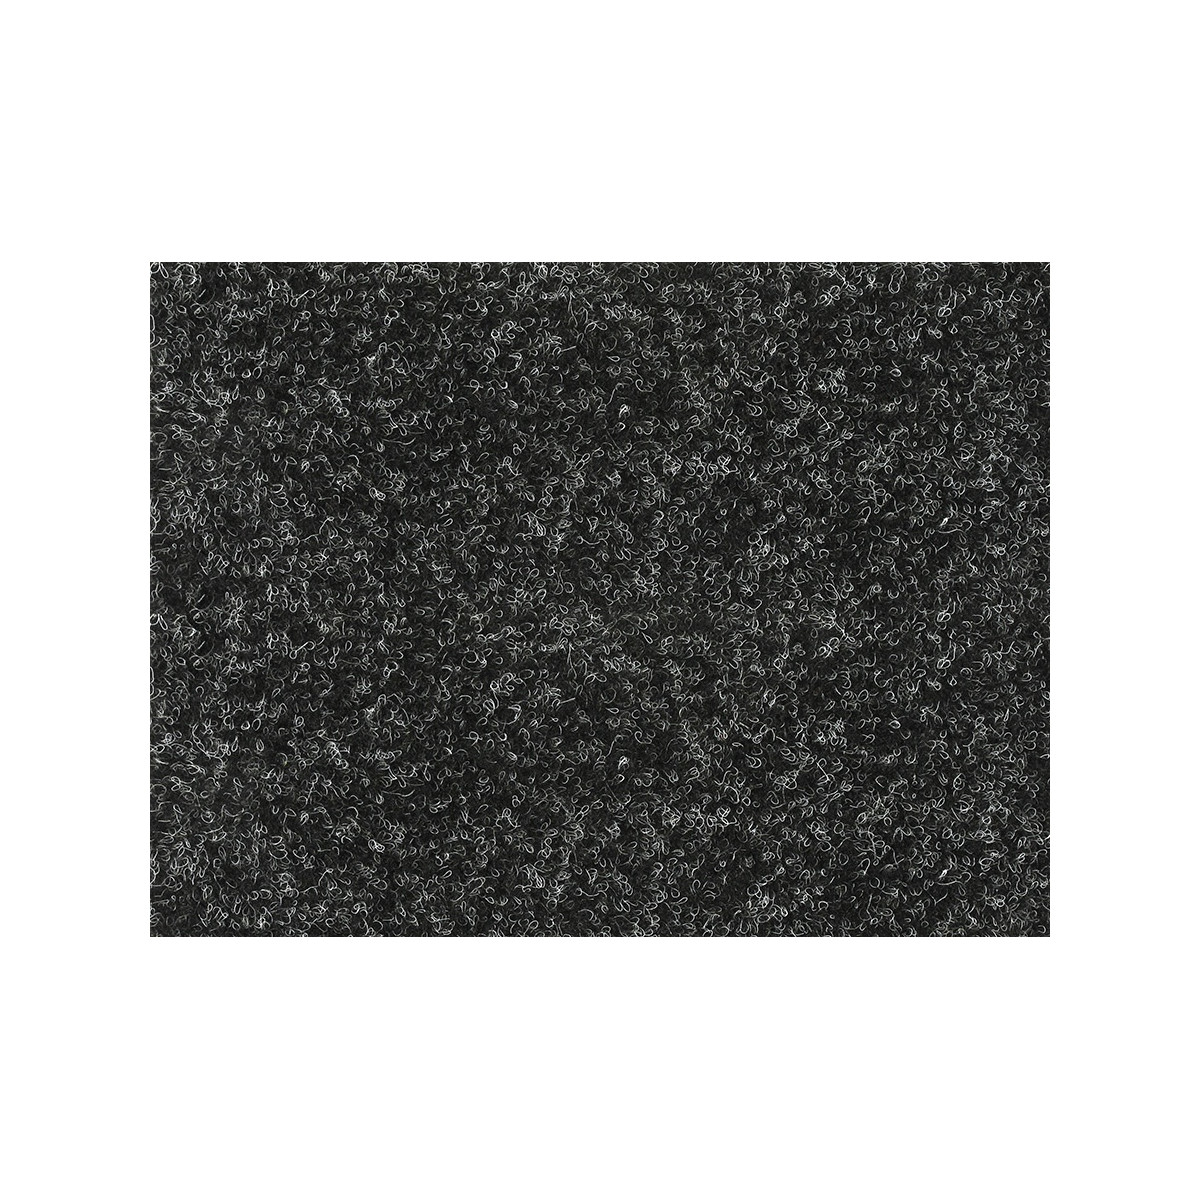 AKCE: 89x255 cm Metrážový koberec Santana 50 černá s podkladem gel, zátěžový